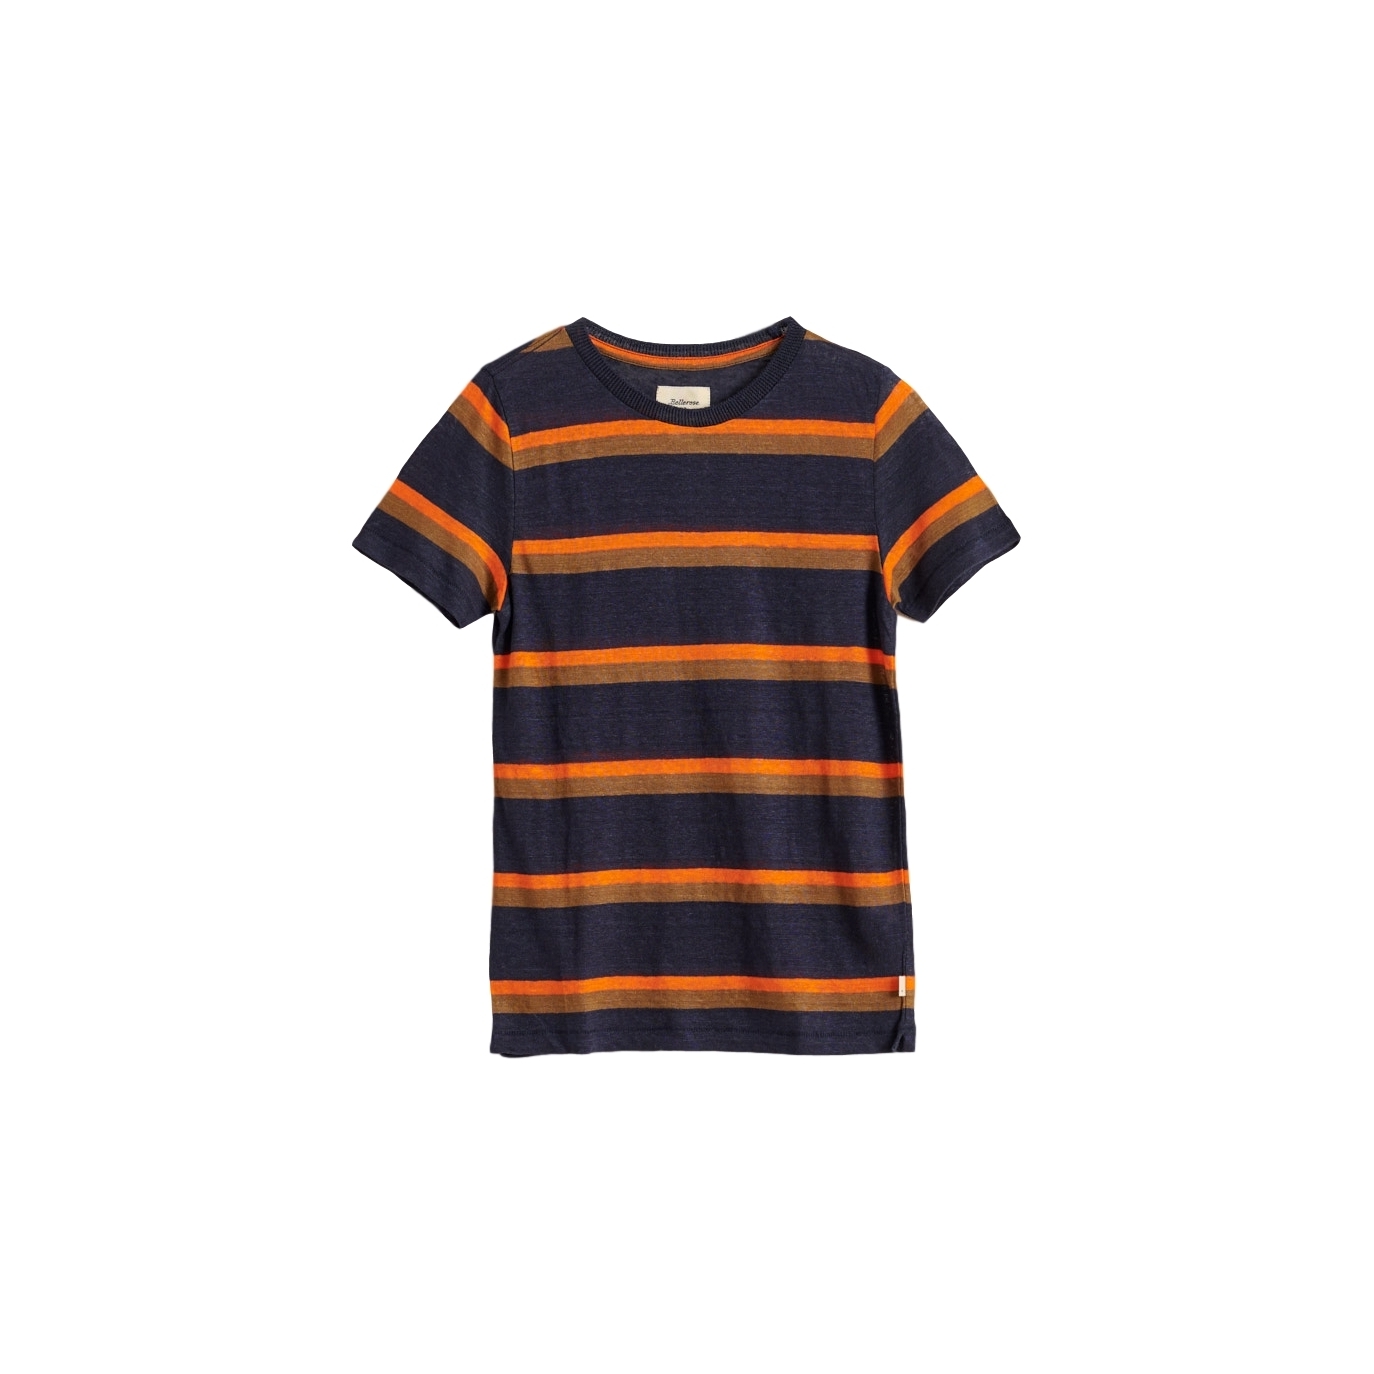 Bellerose - Mogo01 T-shirt Black - Chemises & T-shirts - BK201358 T1302S STE 